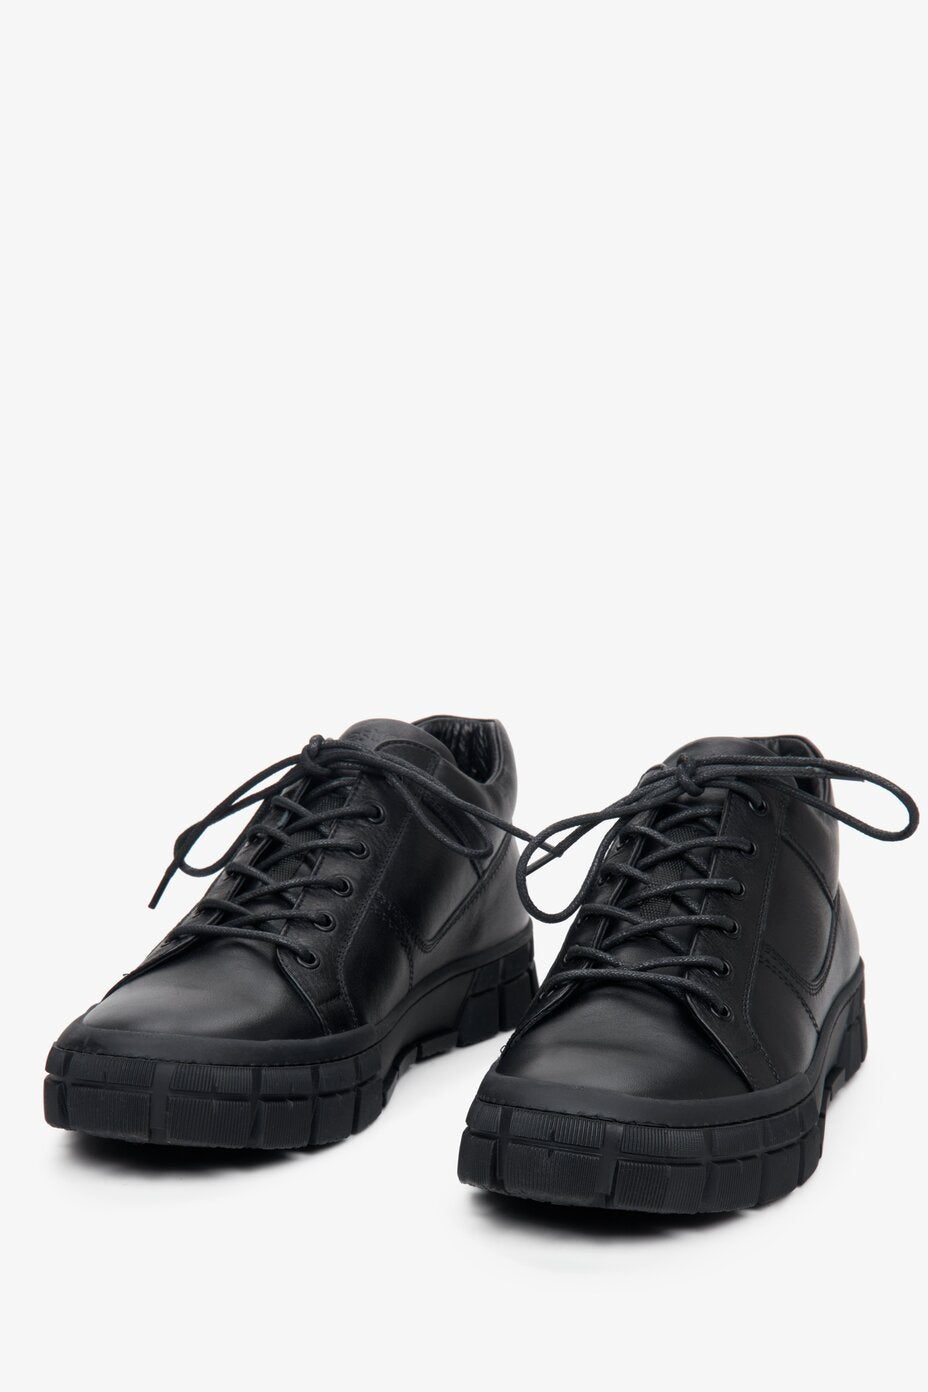 Estro brand black leather men's lace-up shoes - presentation of shoe toe.